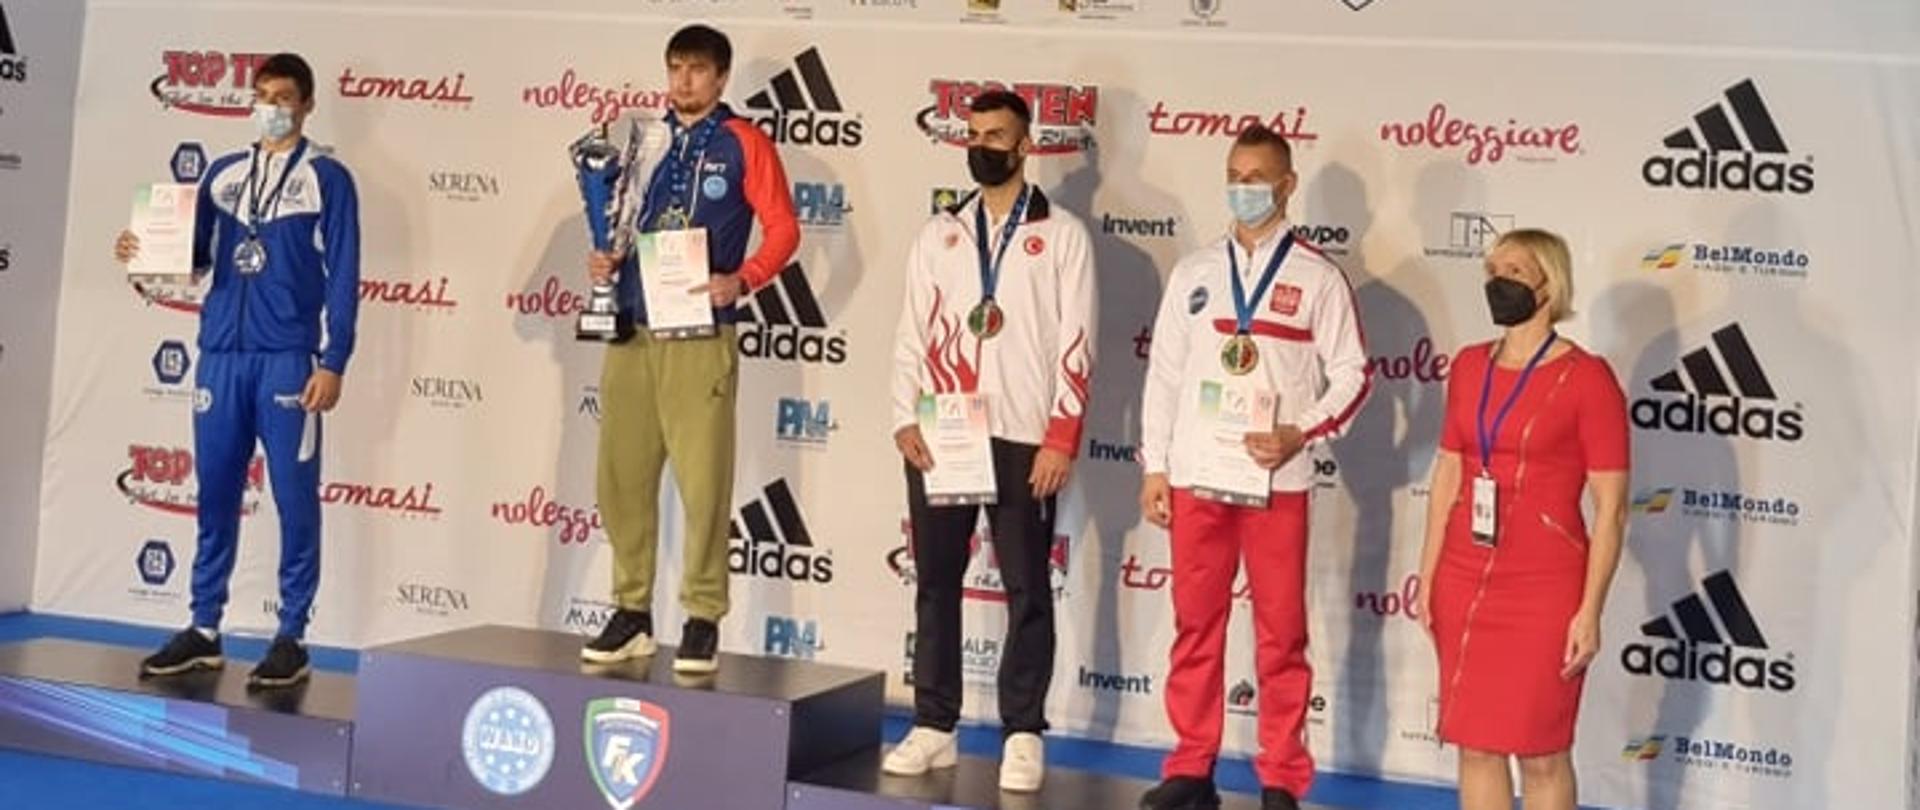 Na niebieskiej scenie znajduje się podium, a na nim zawodnicy z medalami na szyi. Adrian Durma stoi po prawej stronie ze srebrnym medalem i pamiątkowym dyplomem. Za plecami zawodnicy mają baner reklamowy.